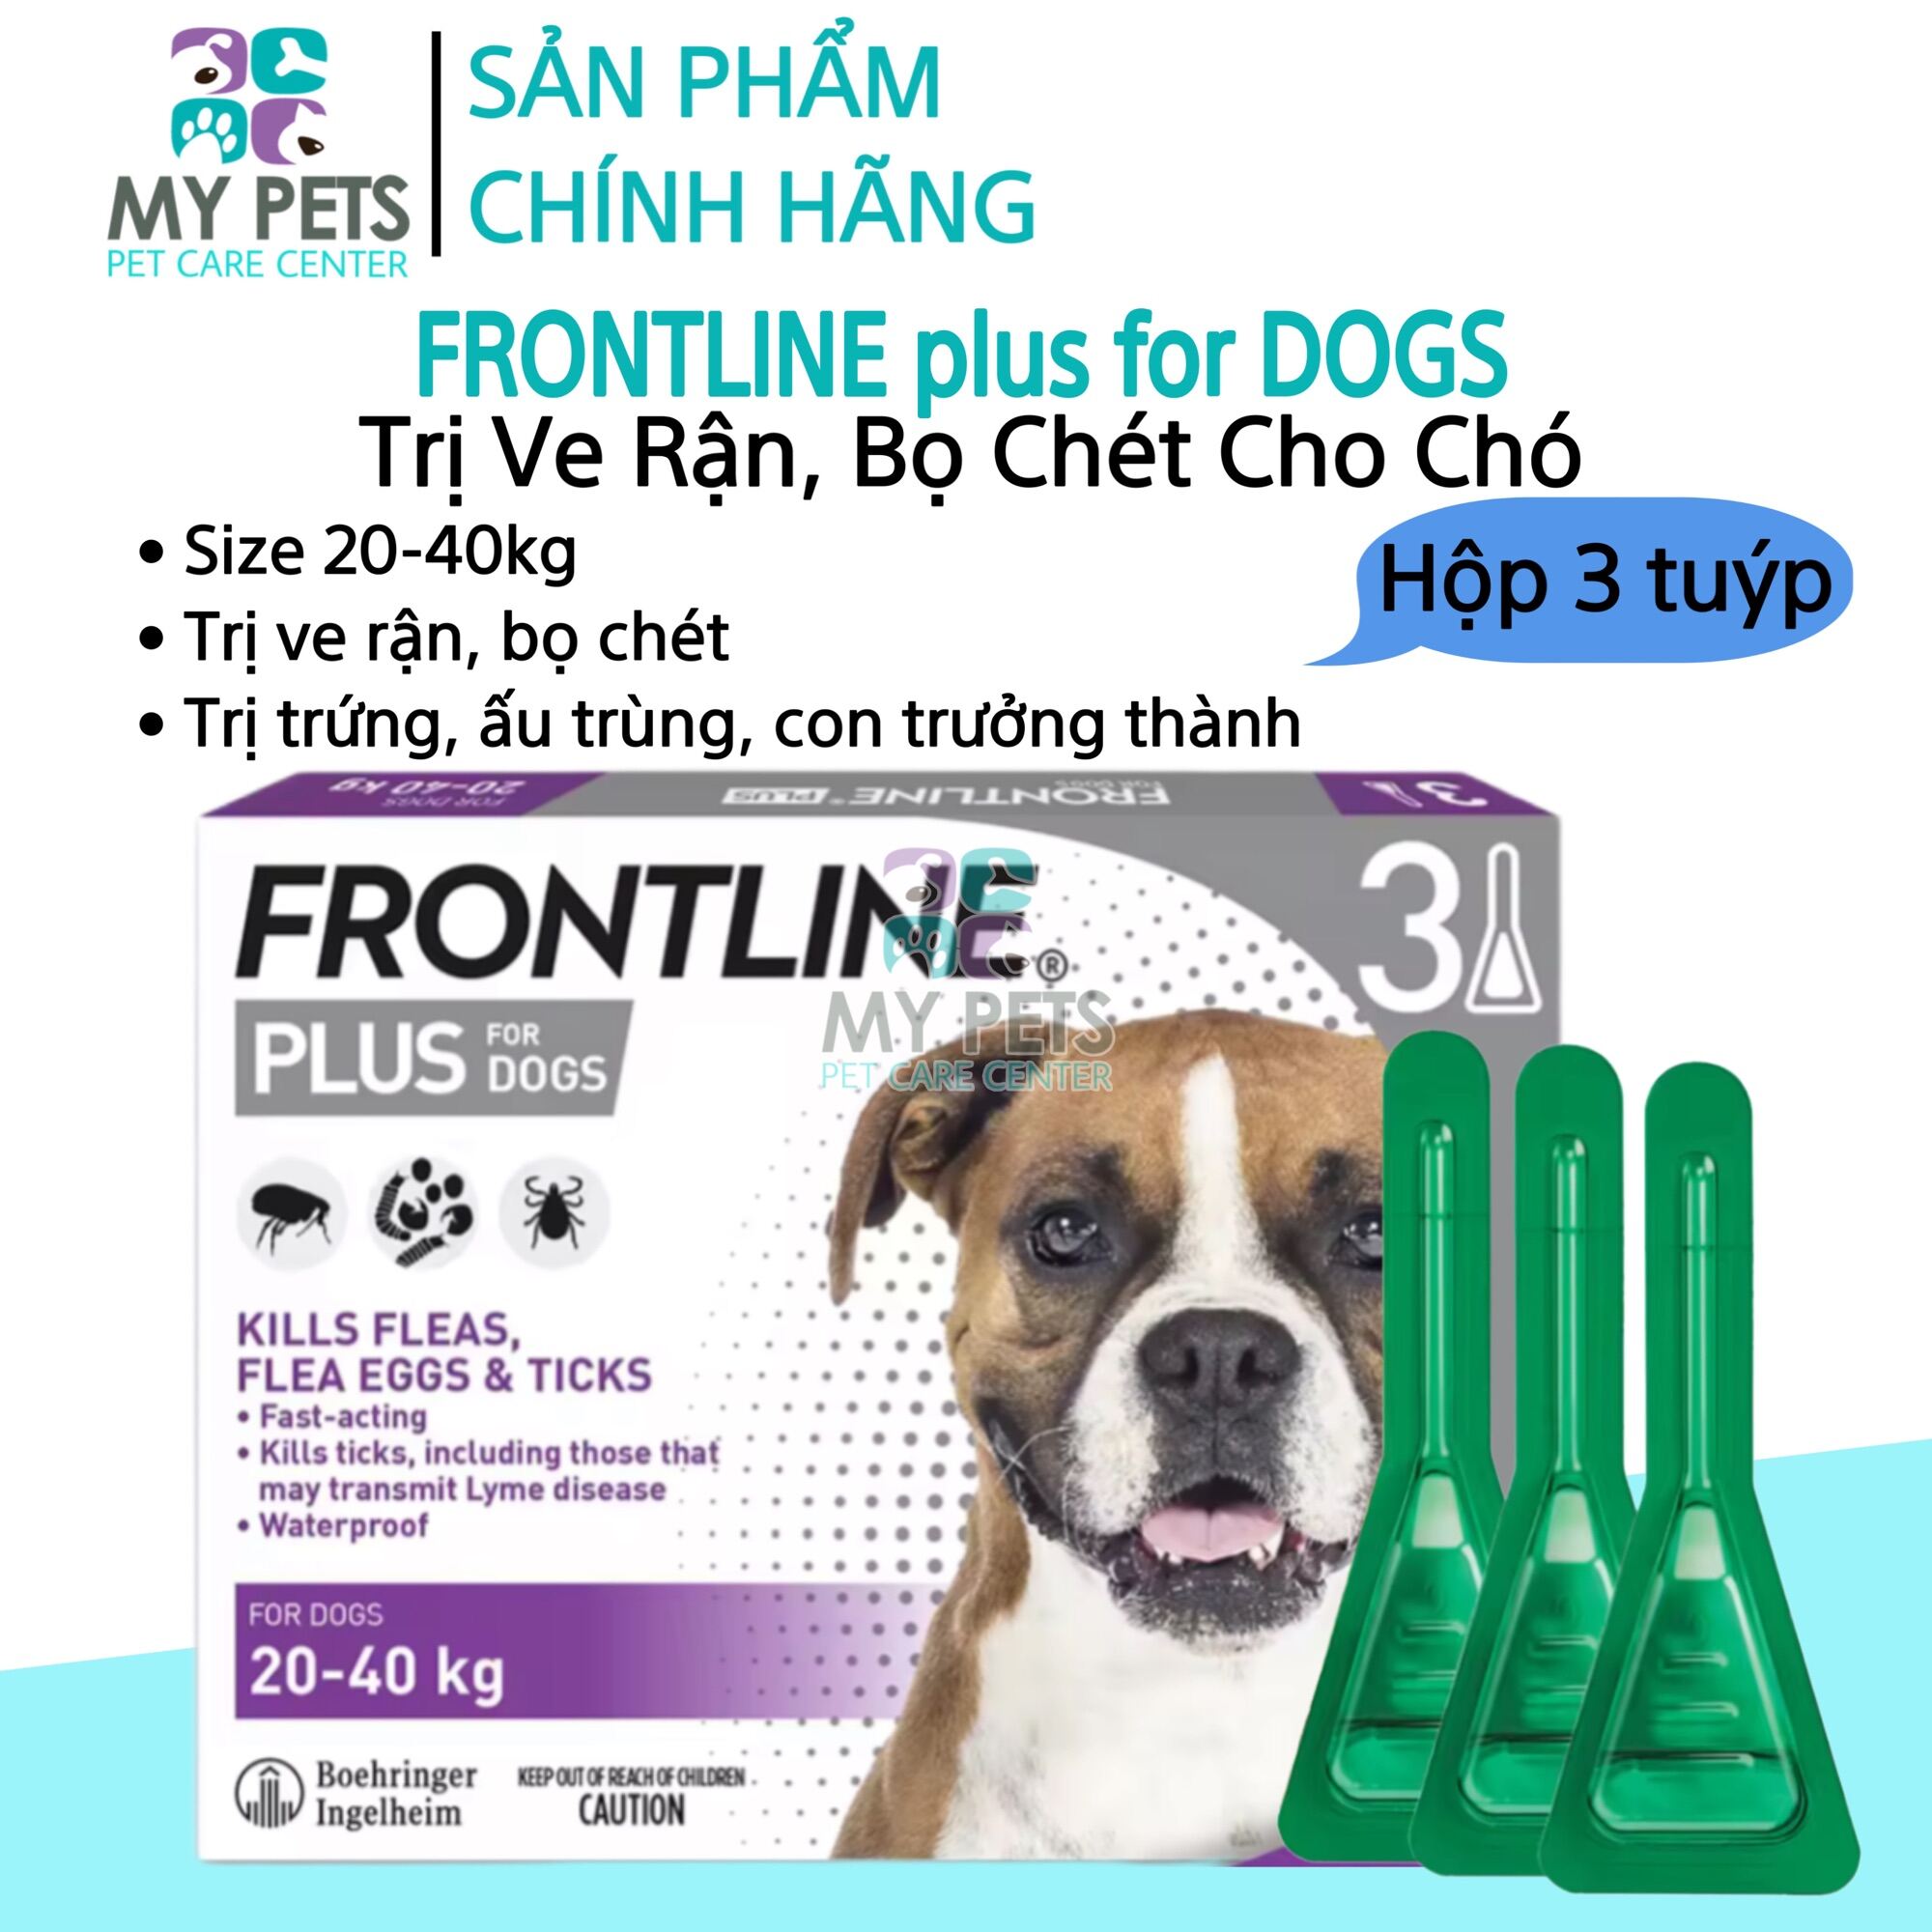 Frontline Plus nhỏ gáy hết ve rận bọ chét cho chó (size 20-40kg) - Hộp 3 tuyp. ( 3 tubes. Full box)